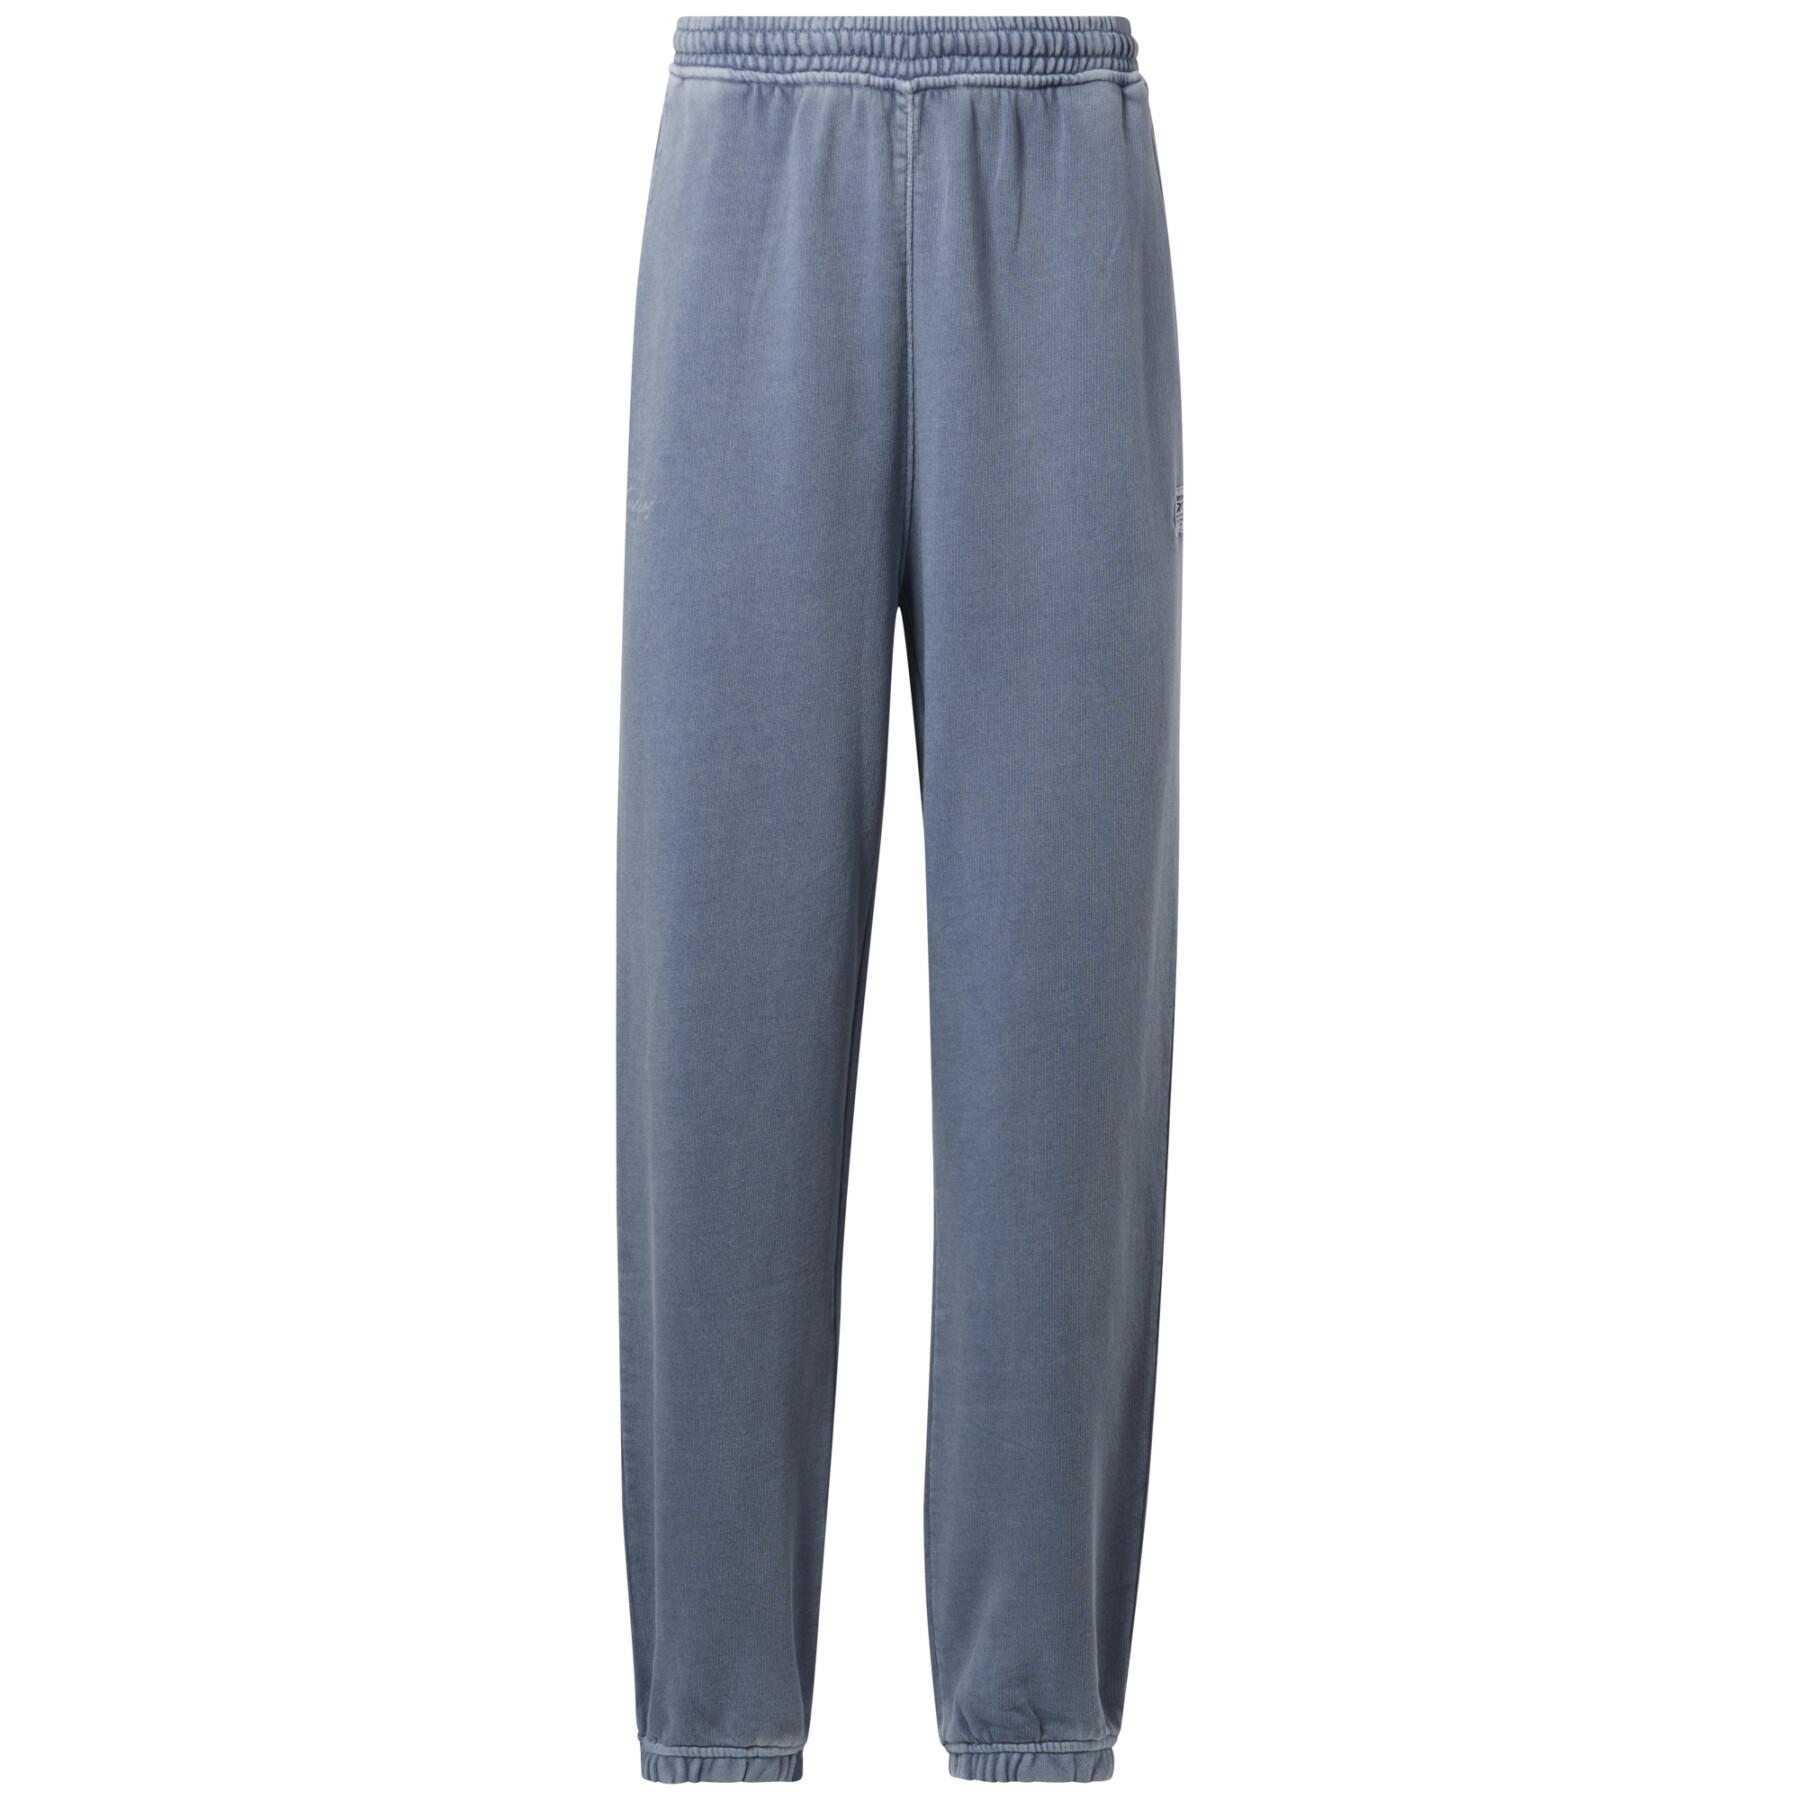 Women's trousers Reebok Les Mills® Natural Dye